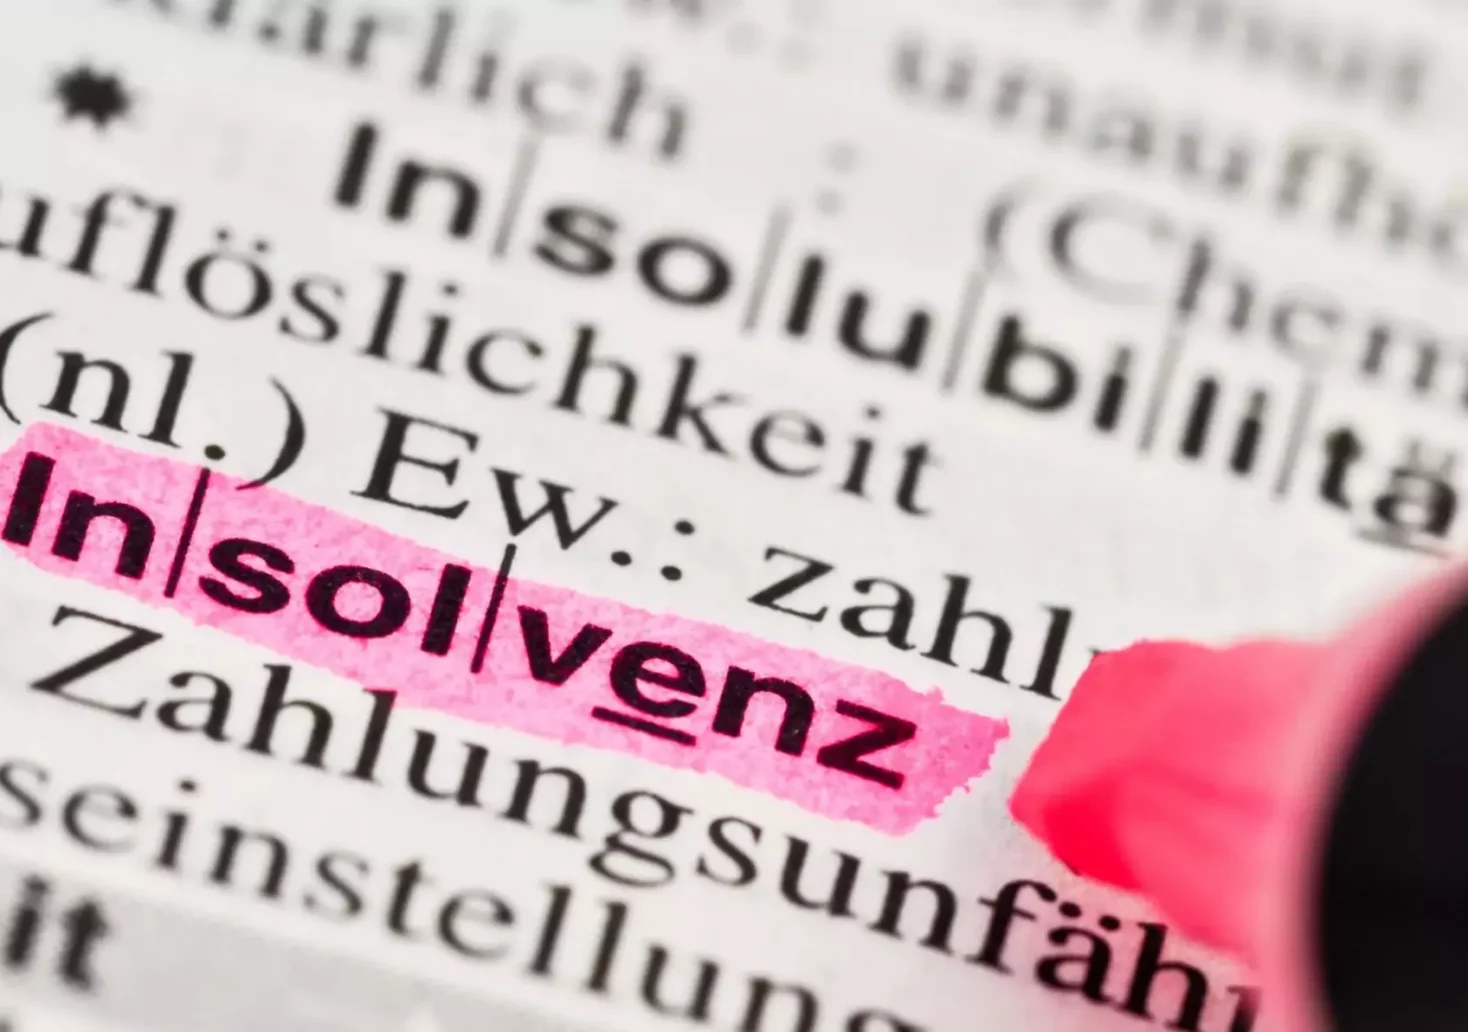 Ein Bild auf 5min.at zeigt ein Wörterbuch, in dem gerade das Wort Insolvenz mit einem pinken Marker markiert wird.